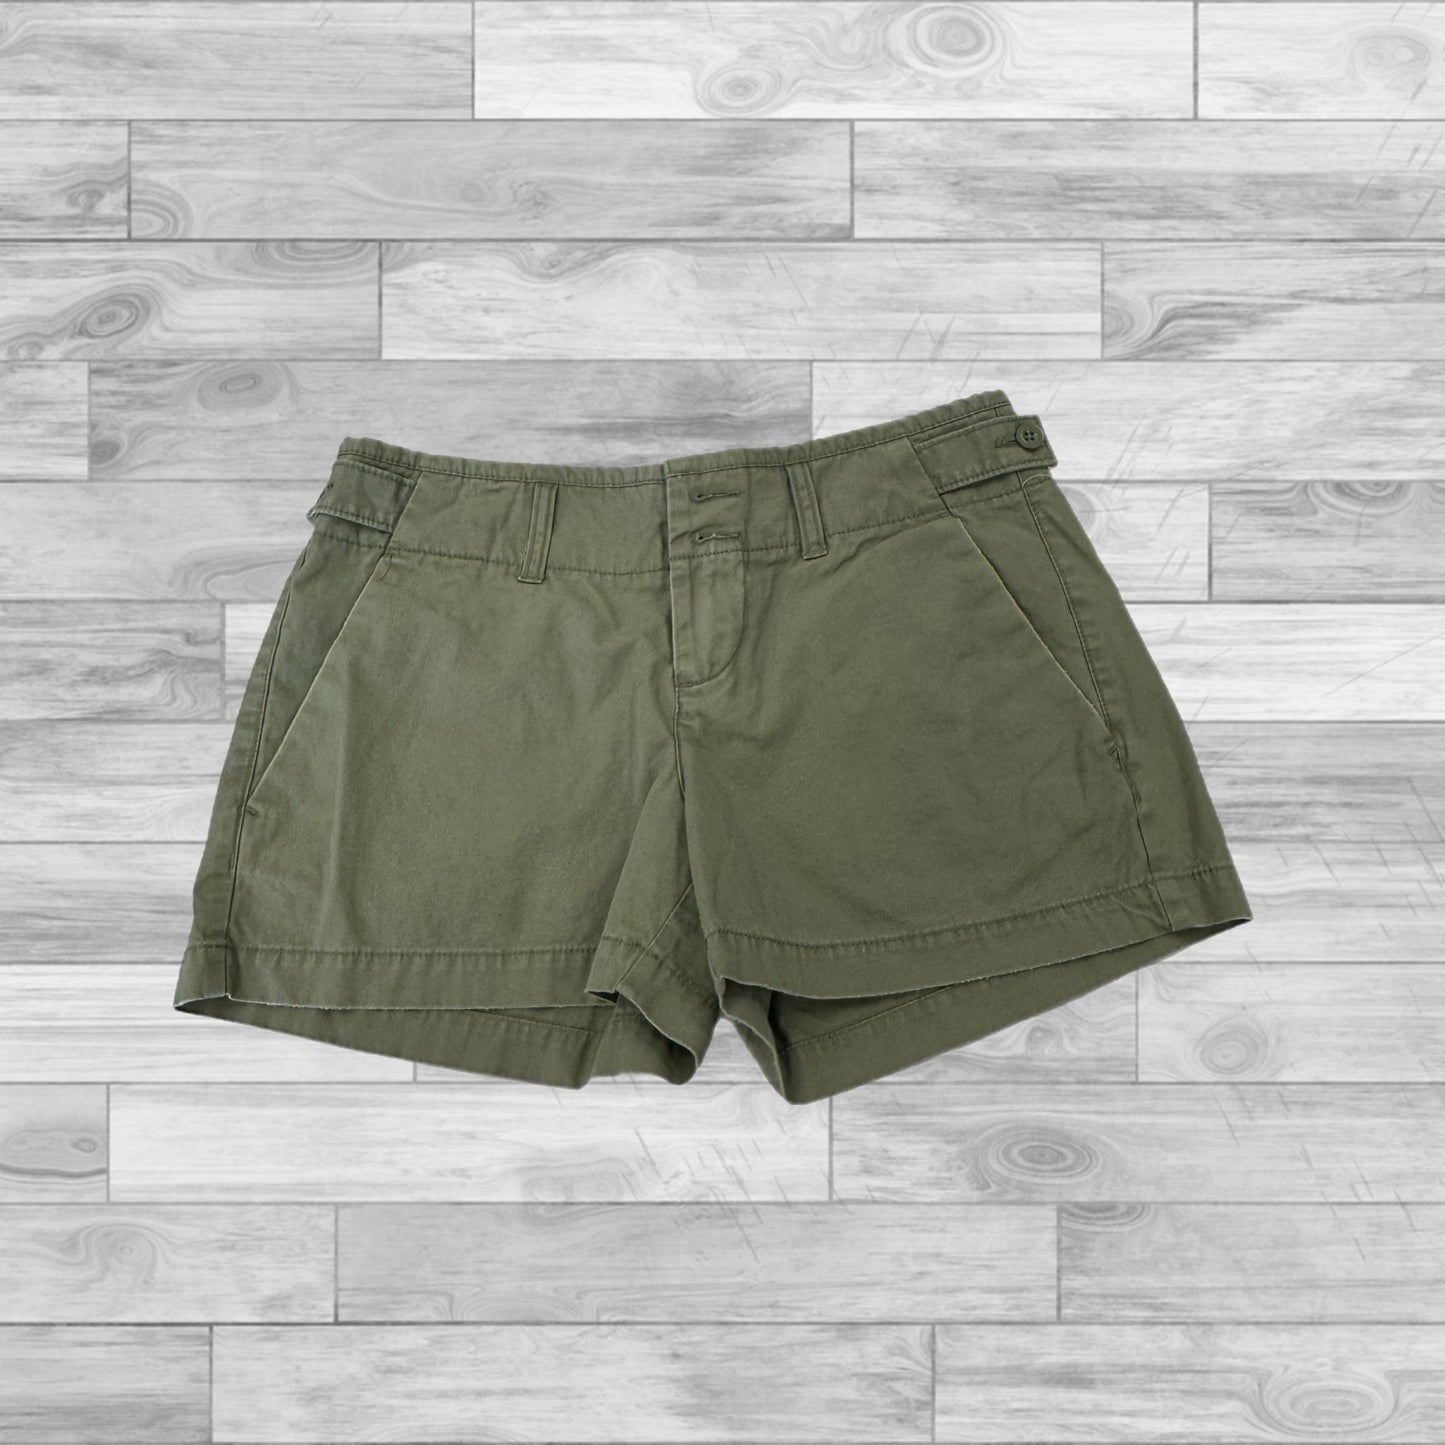 Green Shorts Gap, Size 4